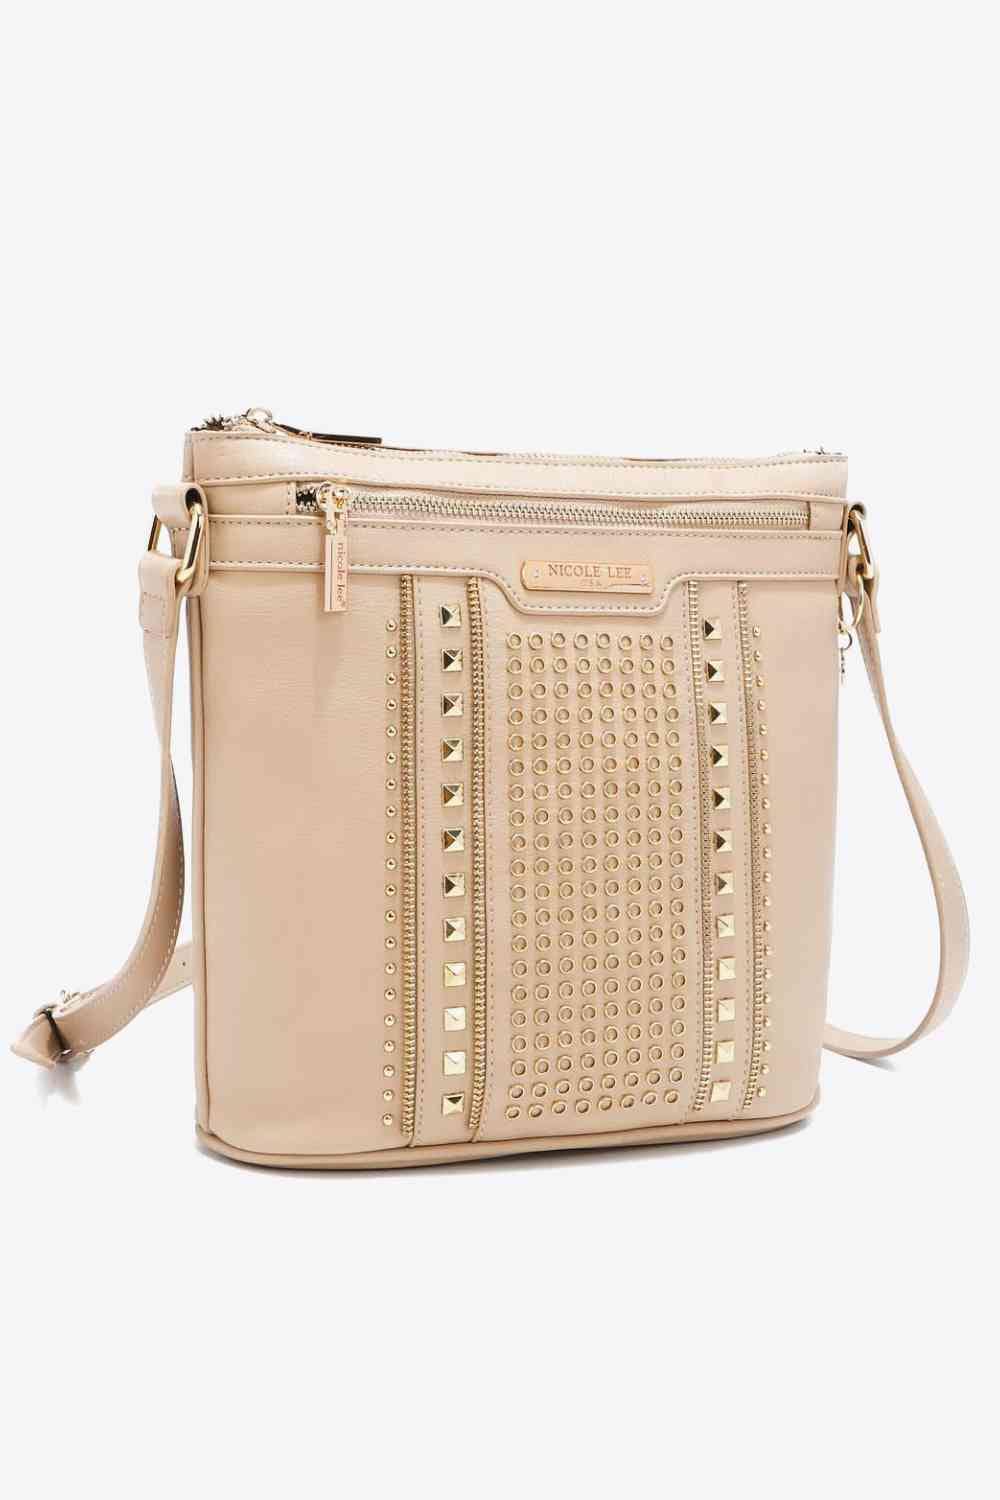 The802Gypsy Handbags, Wallets & Cases Beige / One Size GYPSY-Nicole Lee USA-Handbag